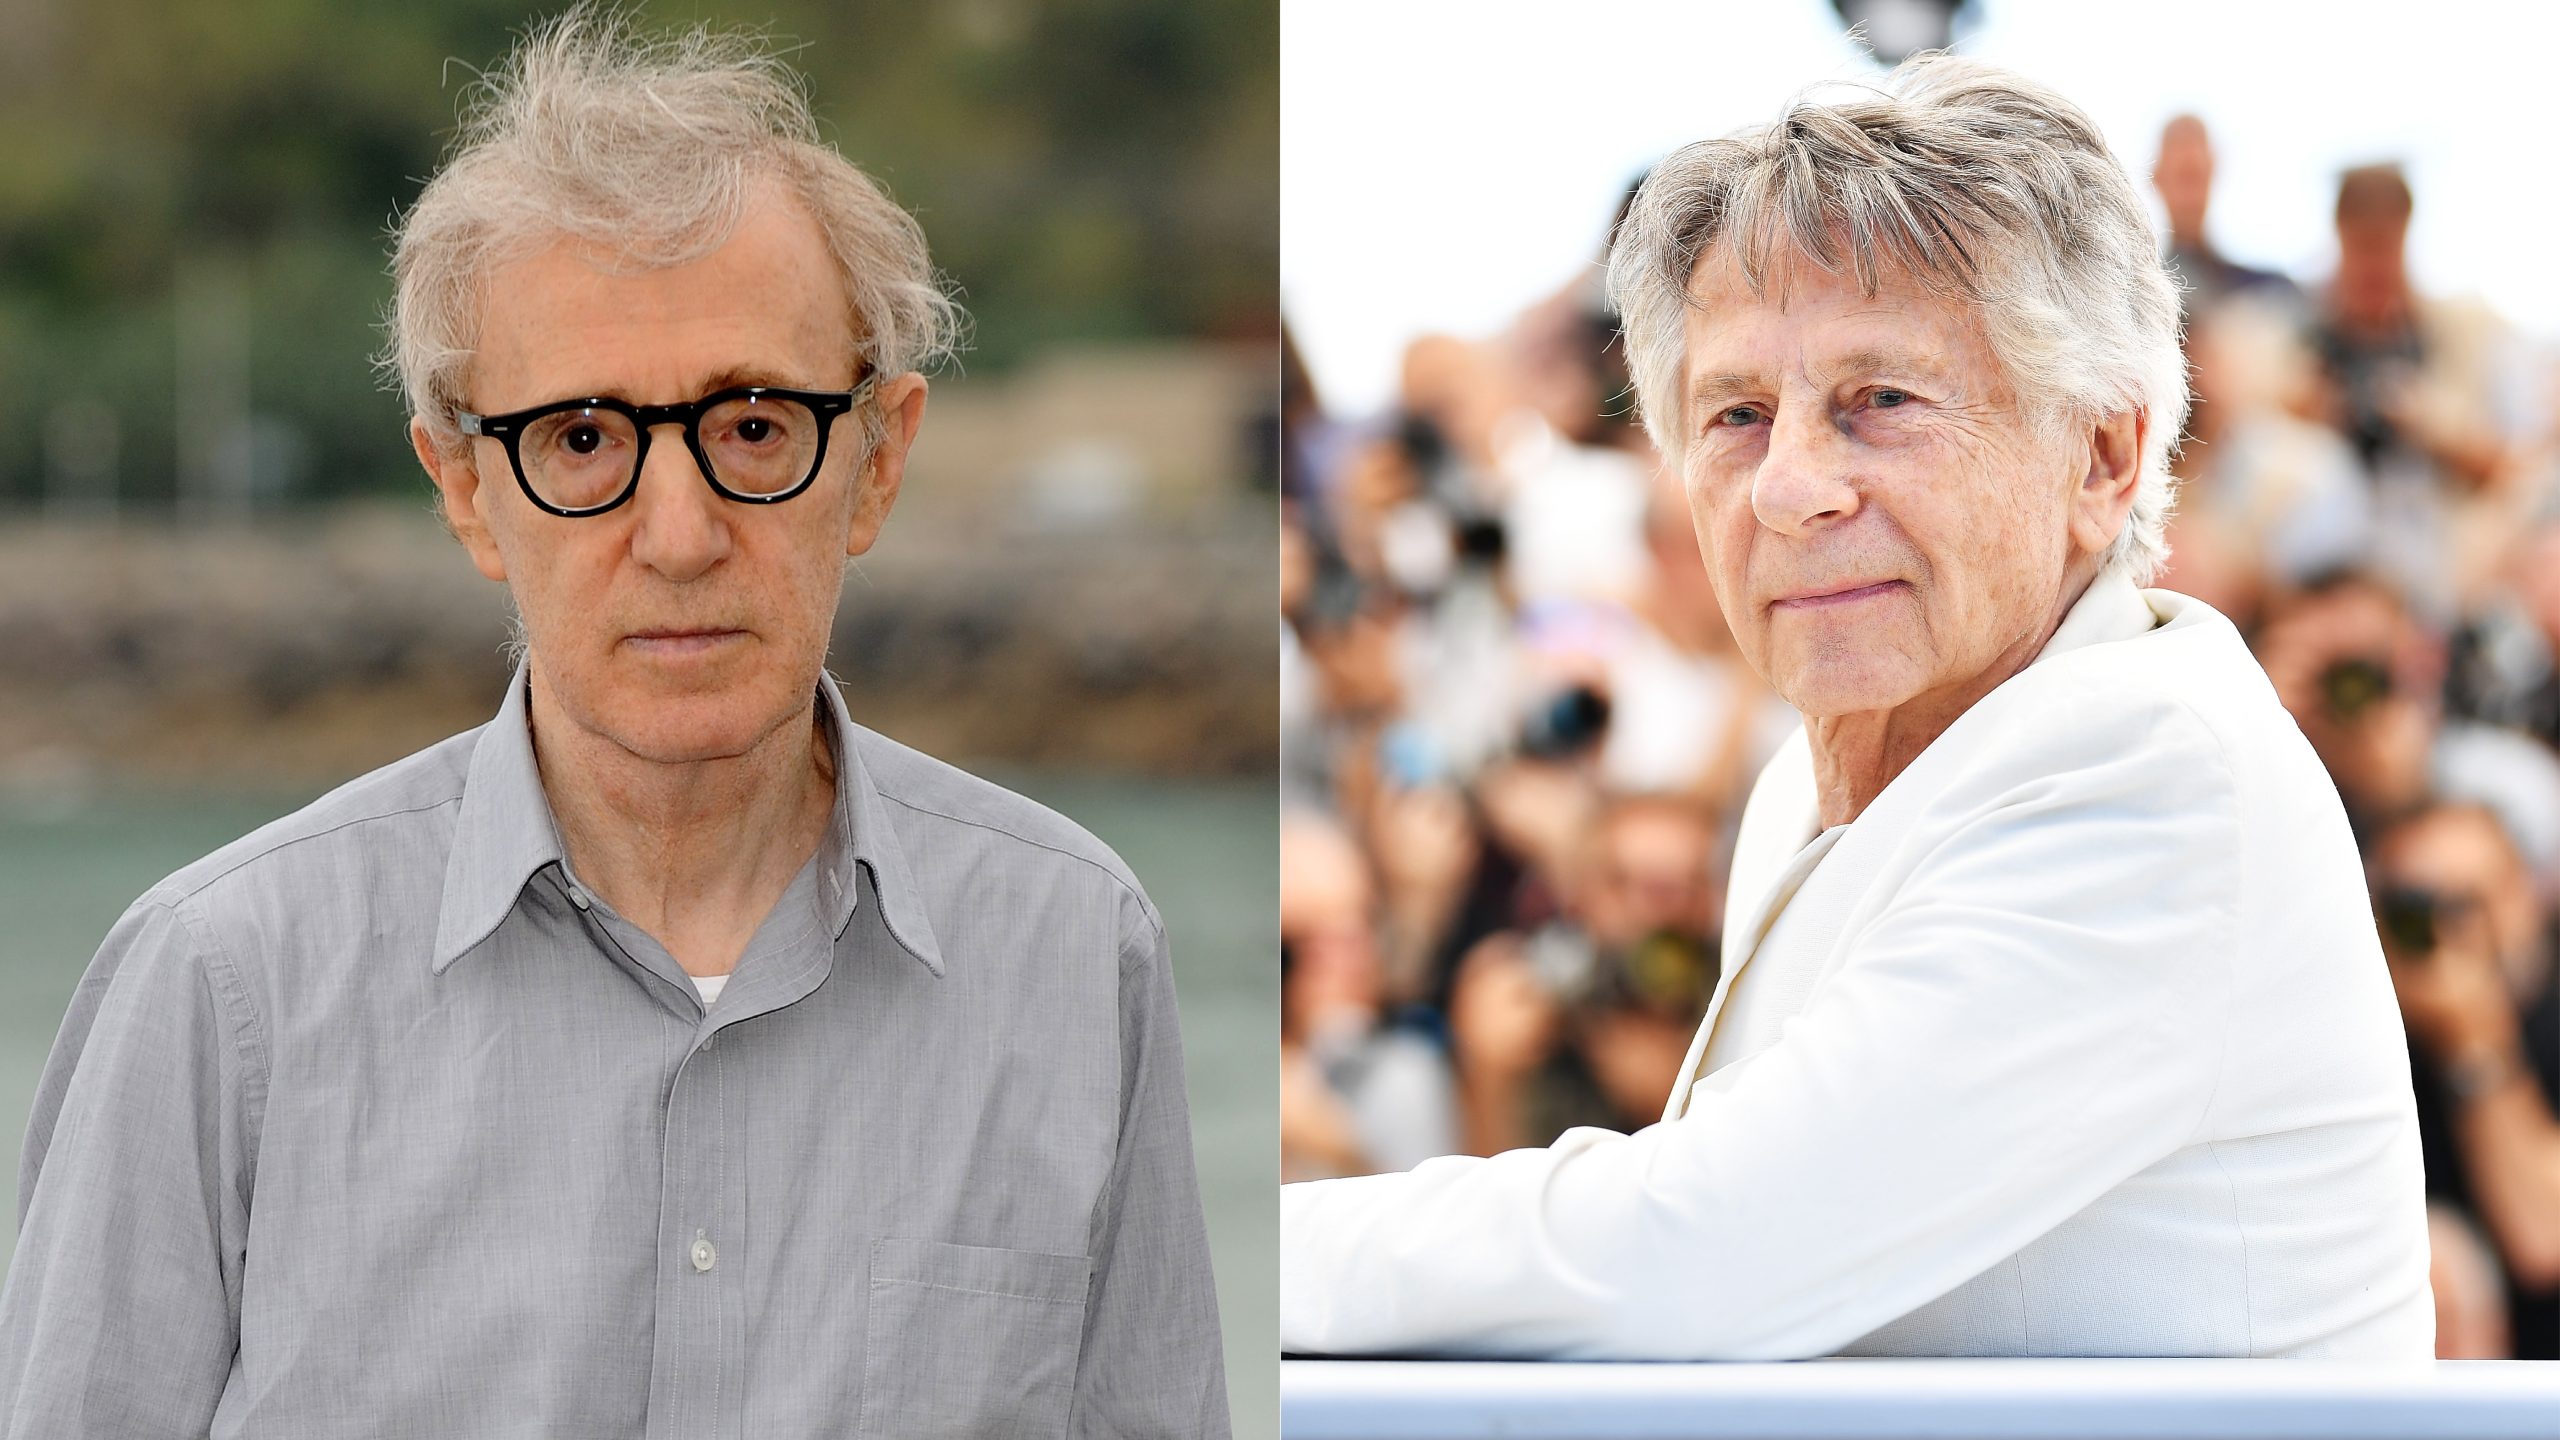 Venice Festival Director Alberto Barbera Anticipates ‘Insults’ Over Woody Allen and Roman Polanski Films